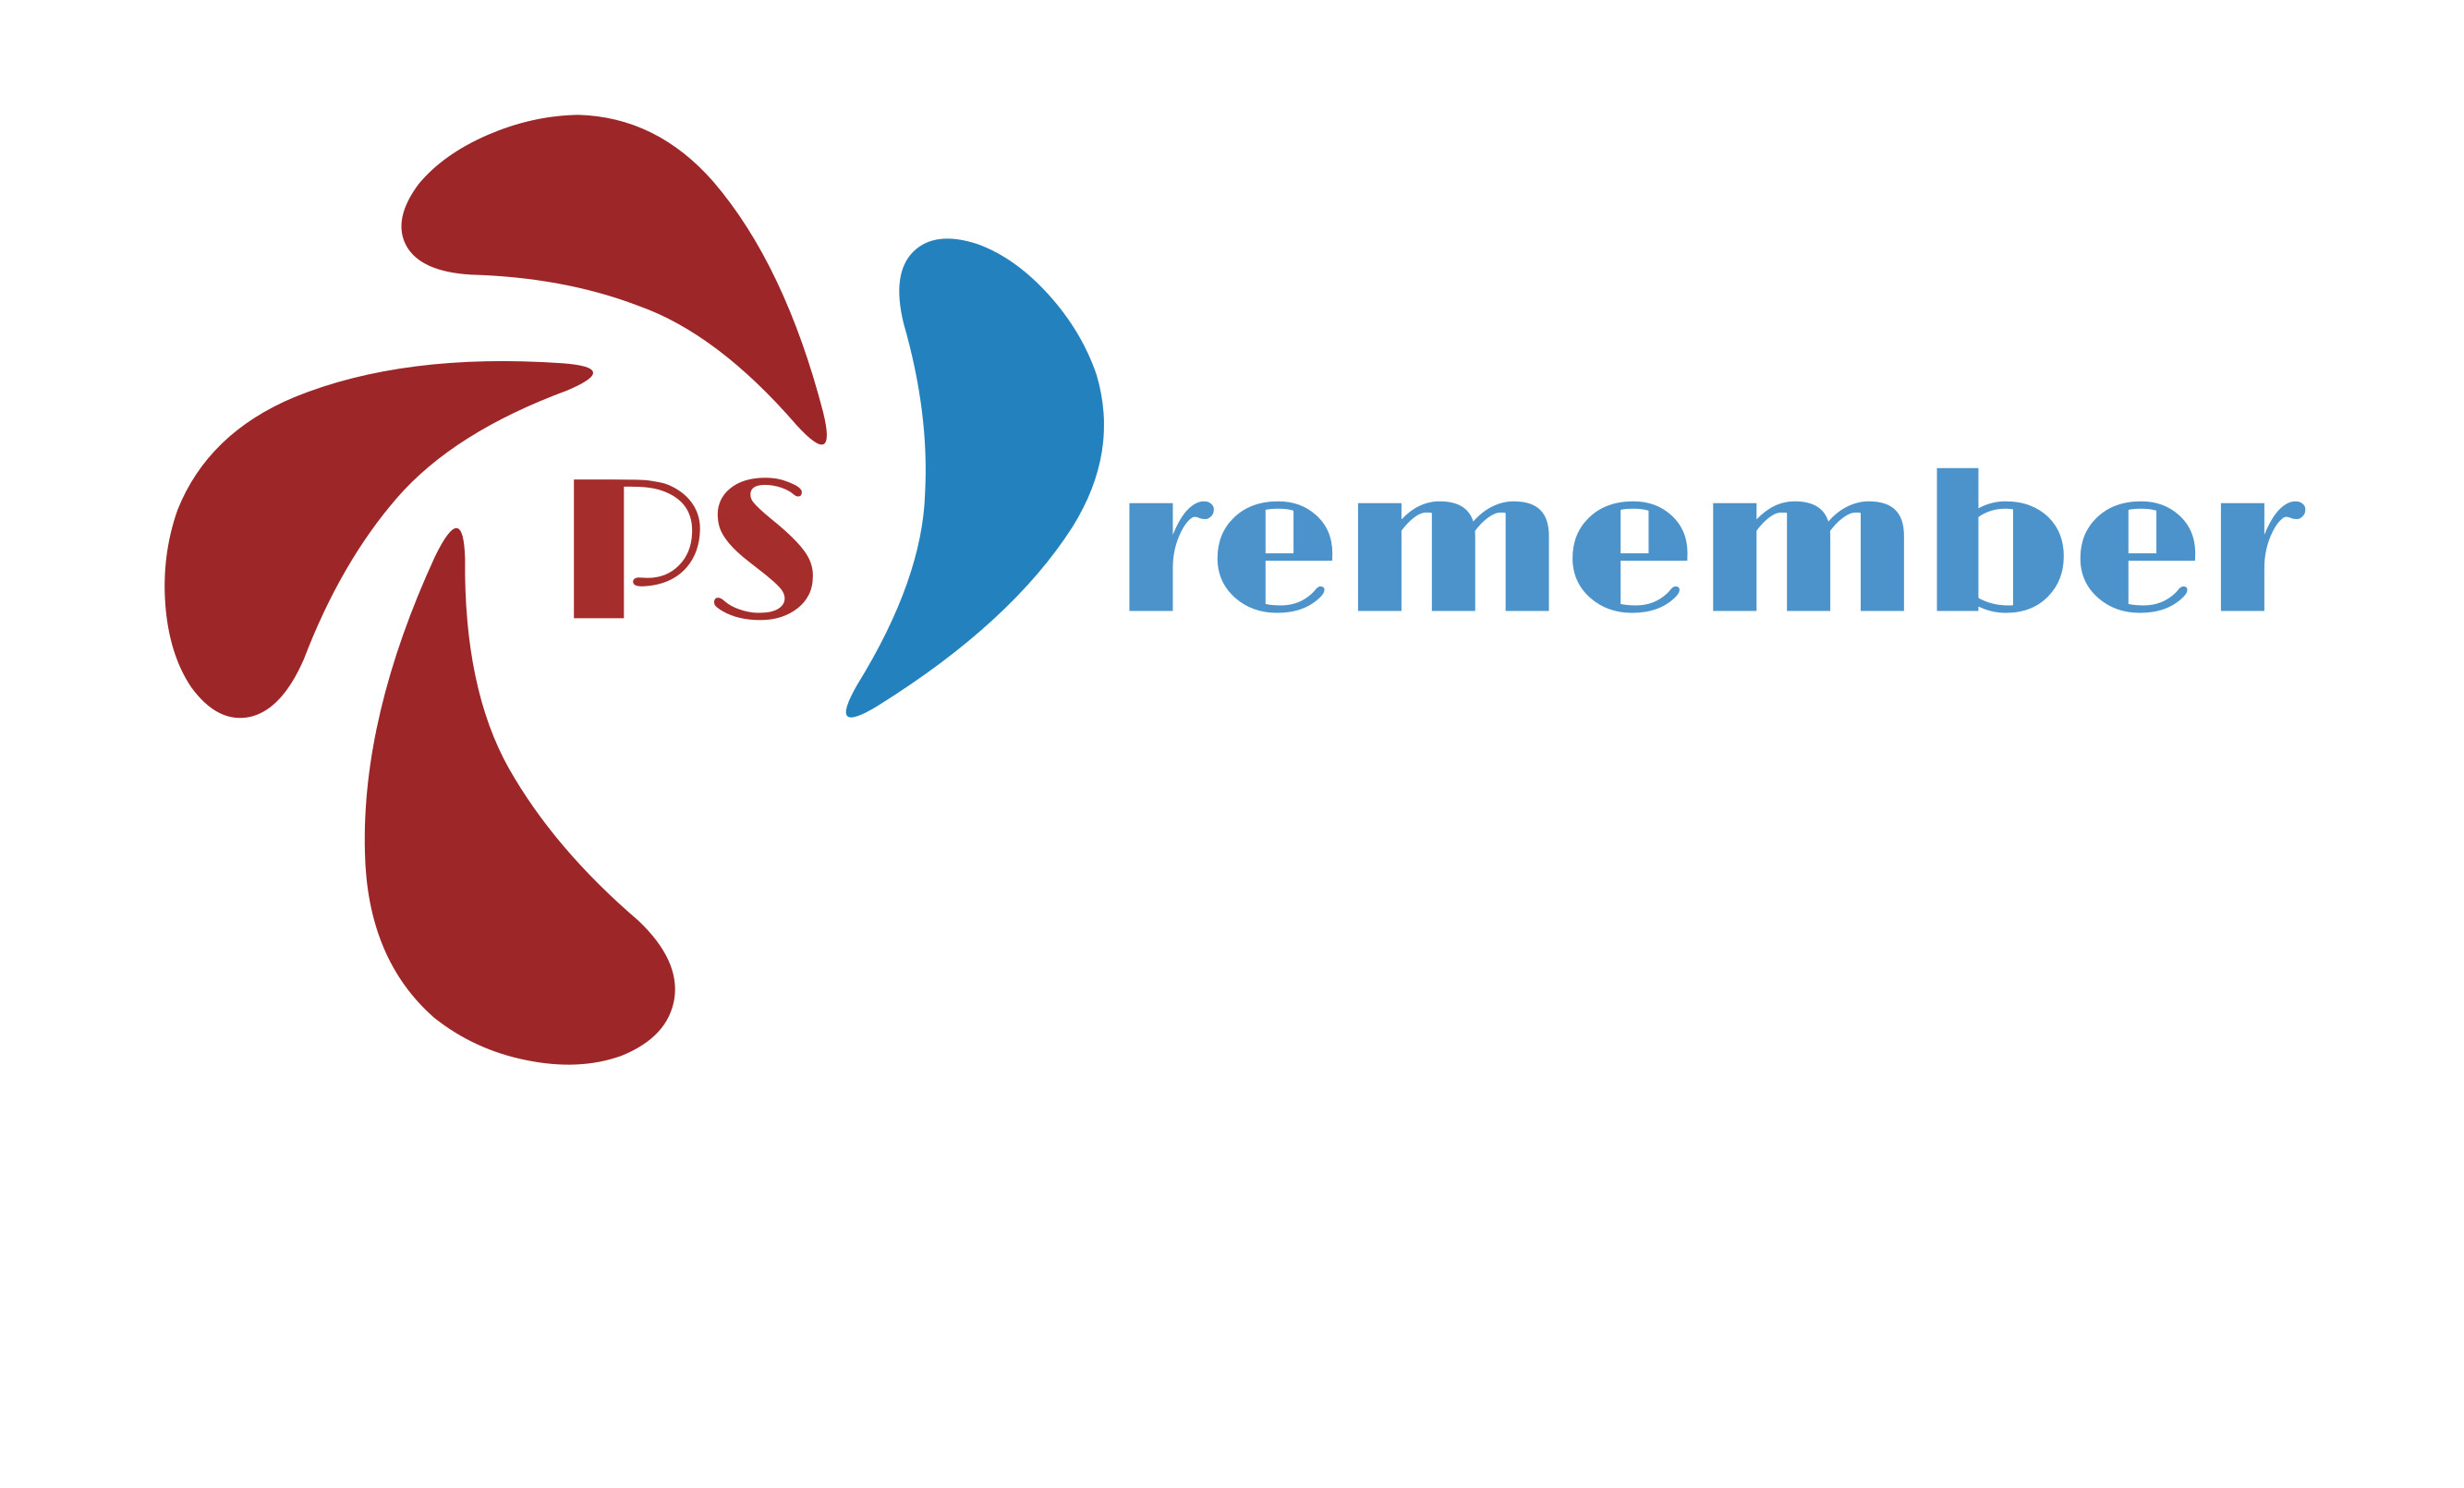 PS Remember logo.jpg